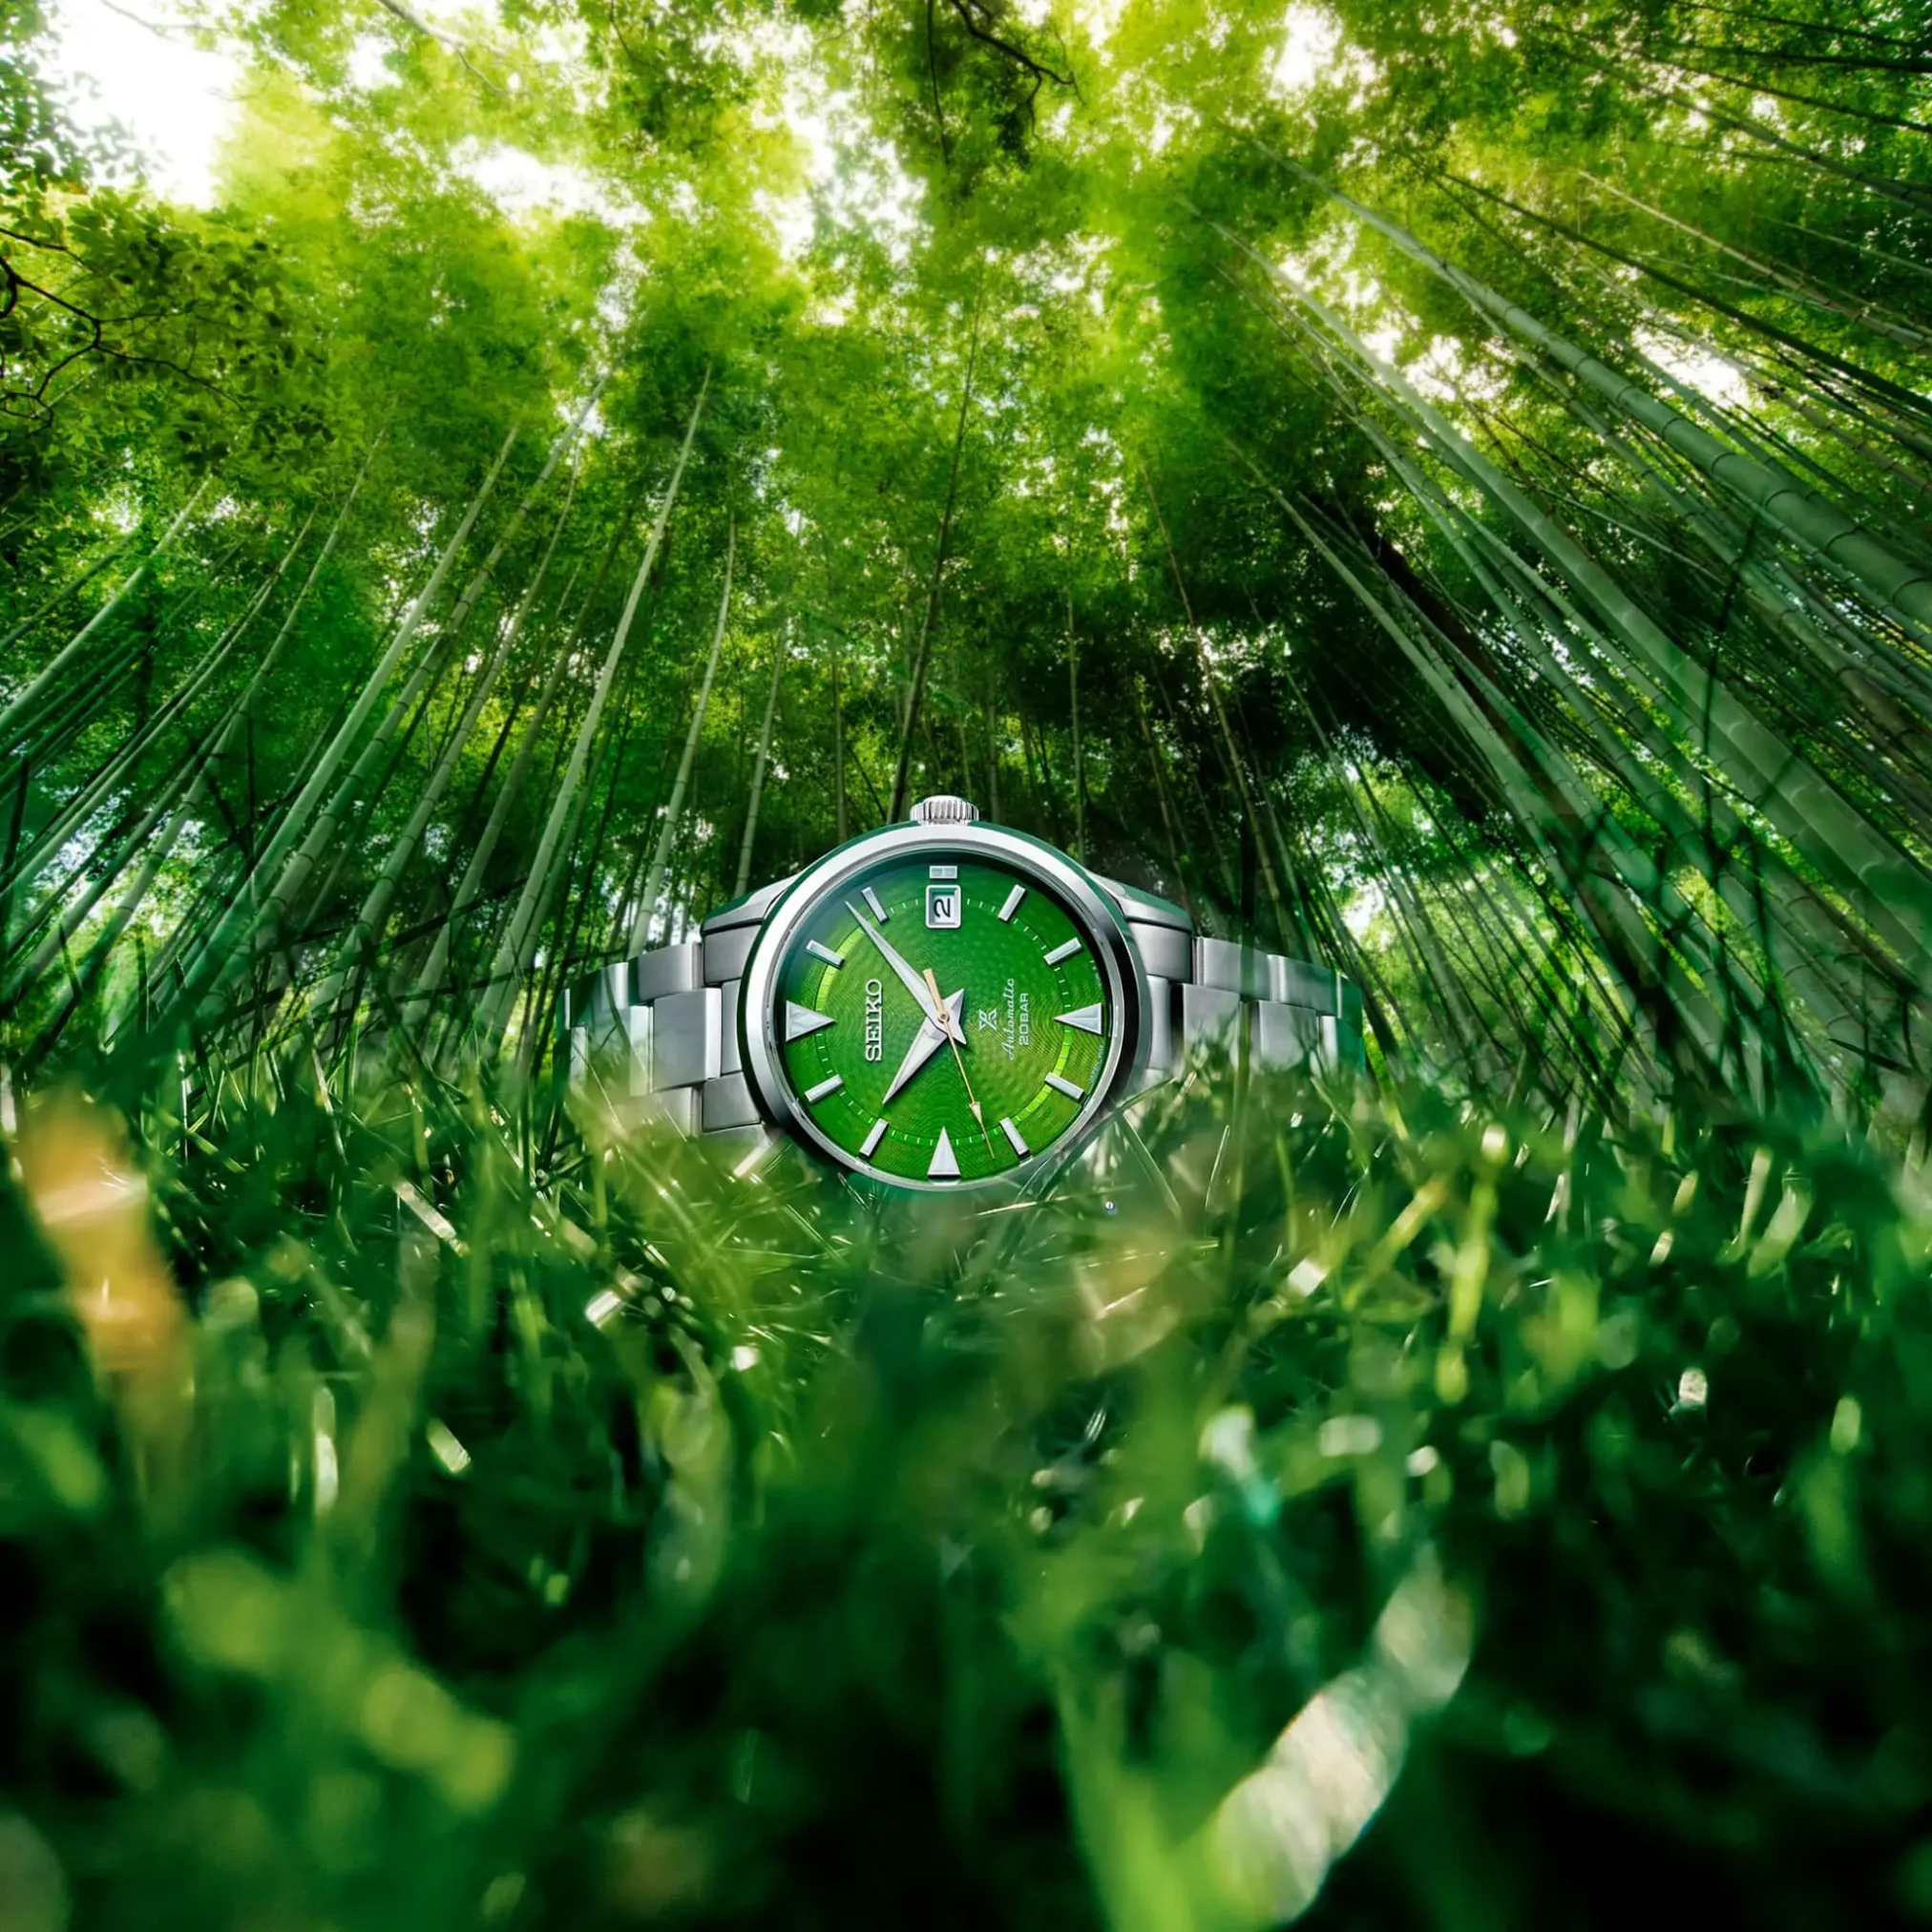 Đồng hồ Seiko Prospex Alpinist Save Forest Bamboo Grove Limited Edition SPB435J mặt số màu xanh. Dây đeo bằng thép. Thân vỏ bằng thép.